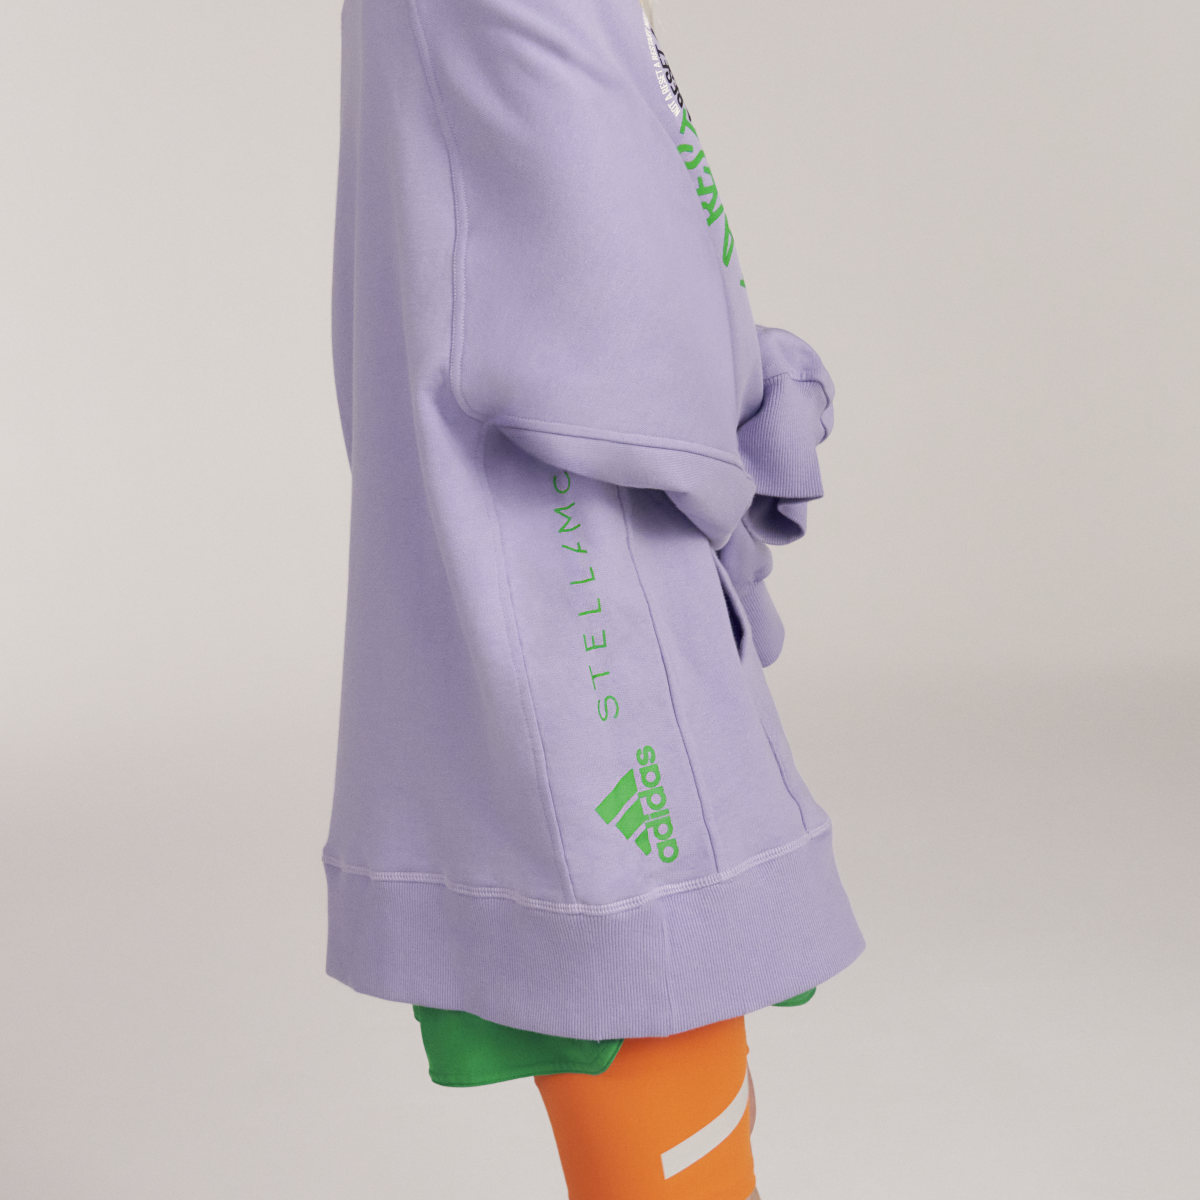 Adidas by Stella McCartney Pull On - Gender Neutral. 10